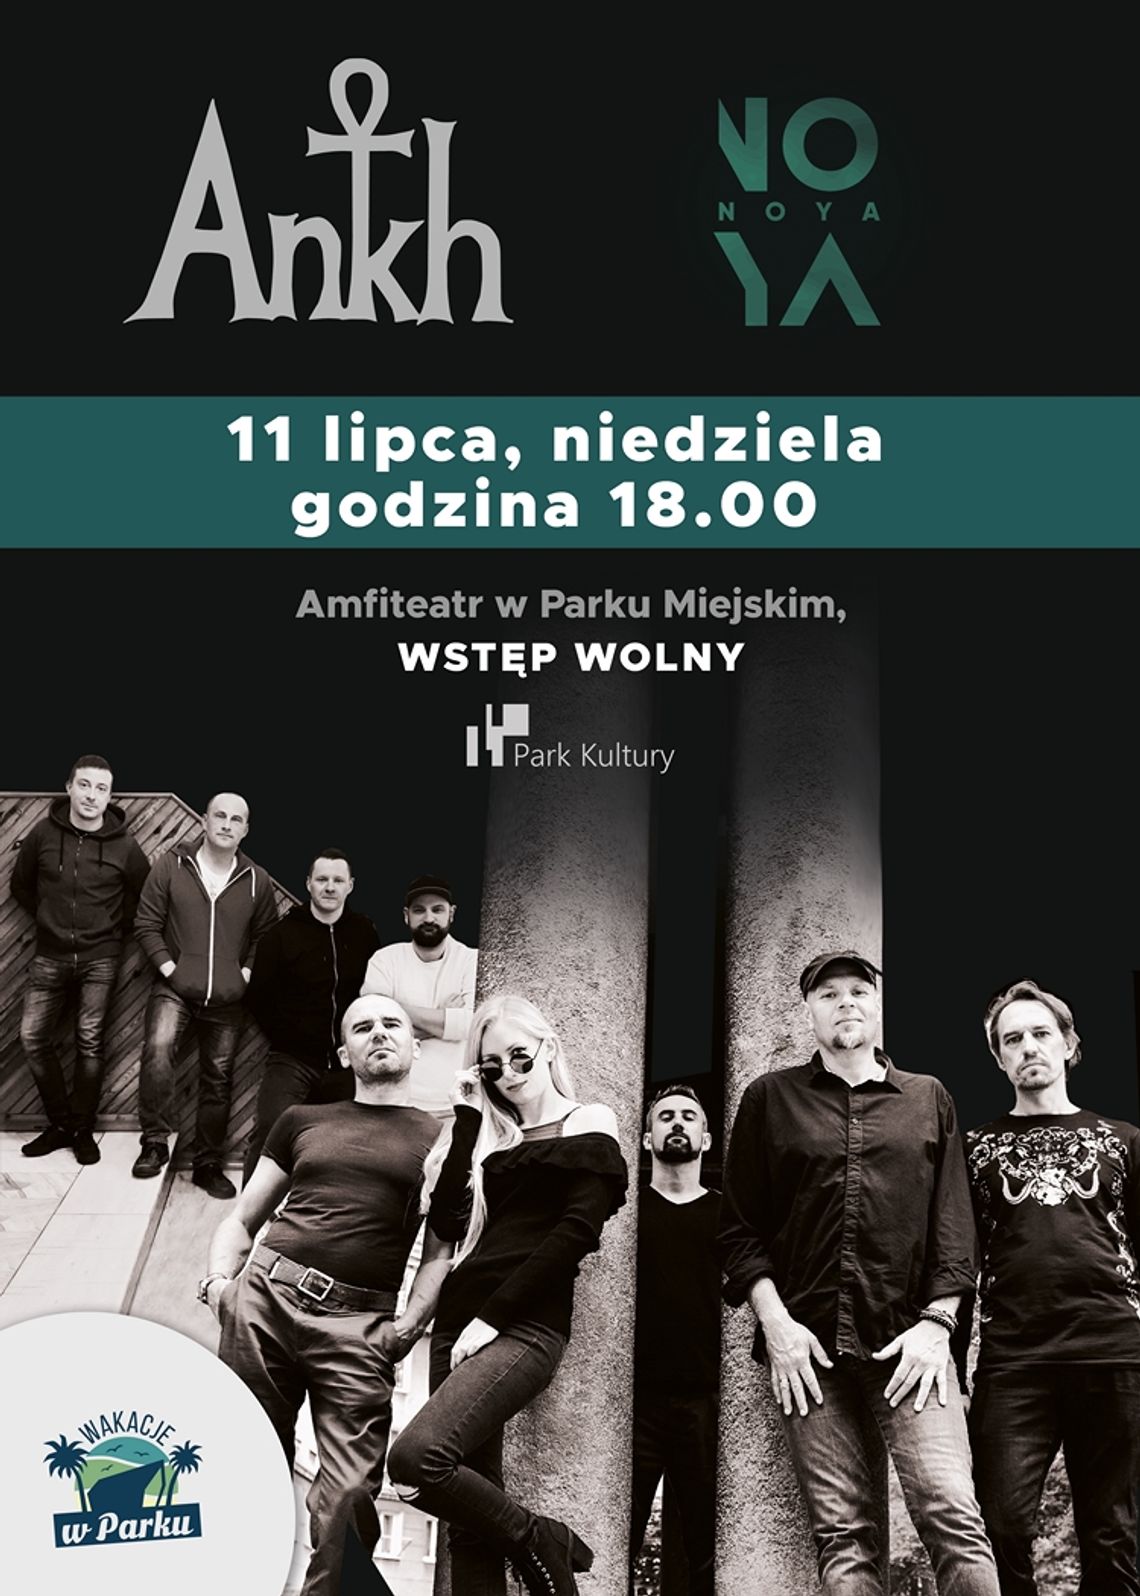 Mocne brzmienia w Amfiteatrze czyli NOYA i Ankh zagrają w Starachowicach!!!